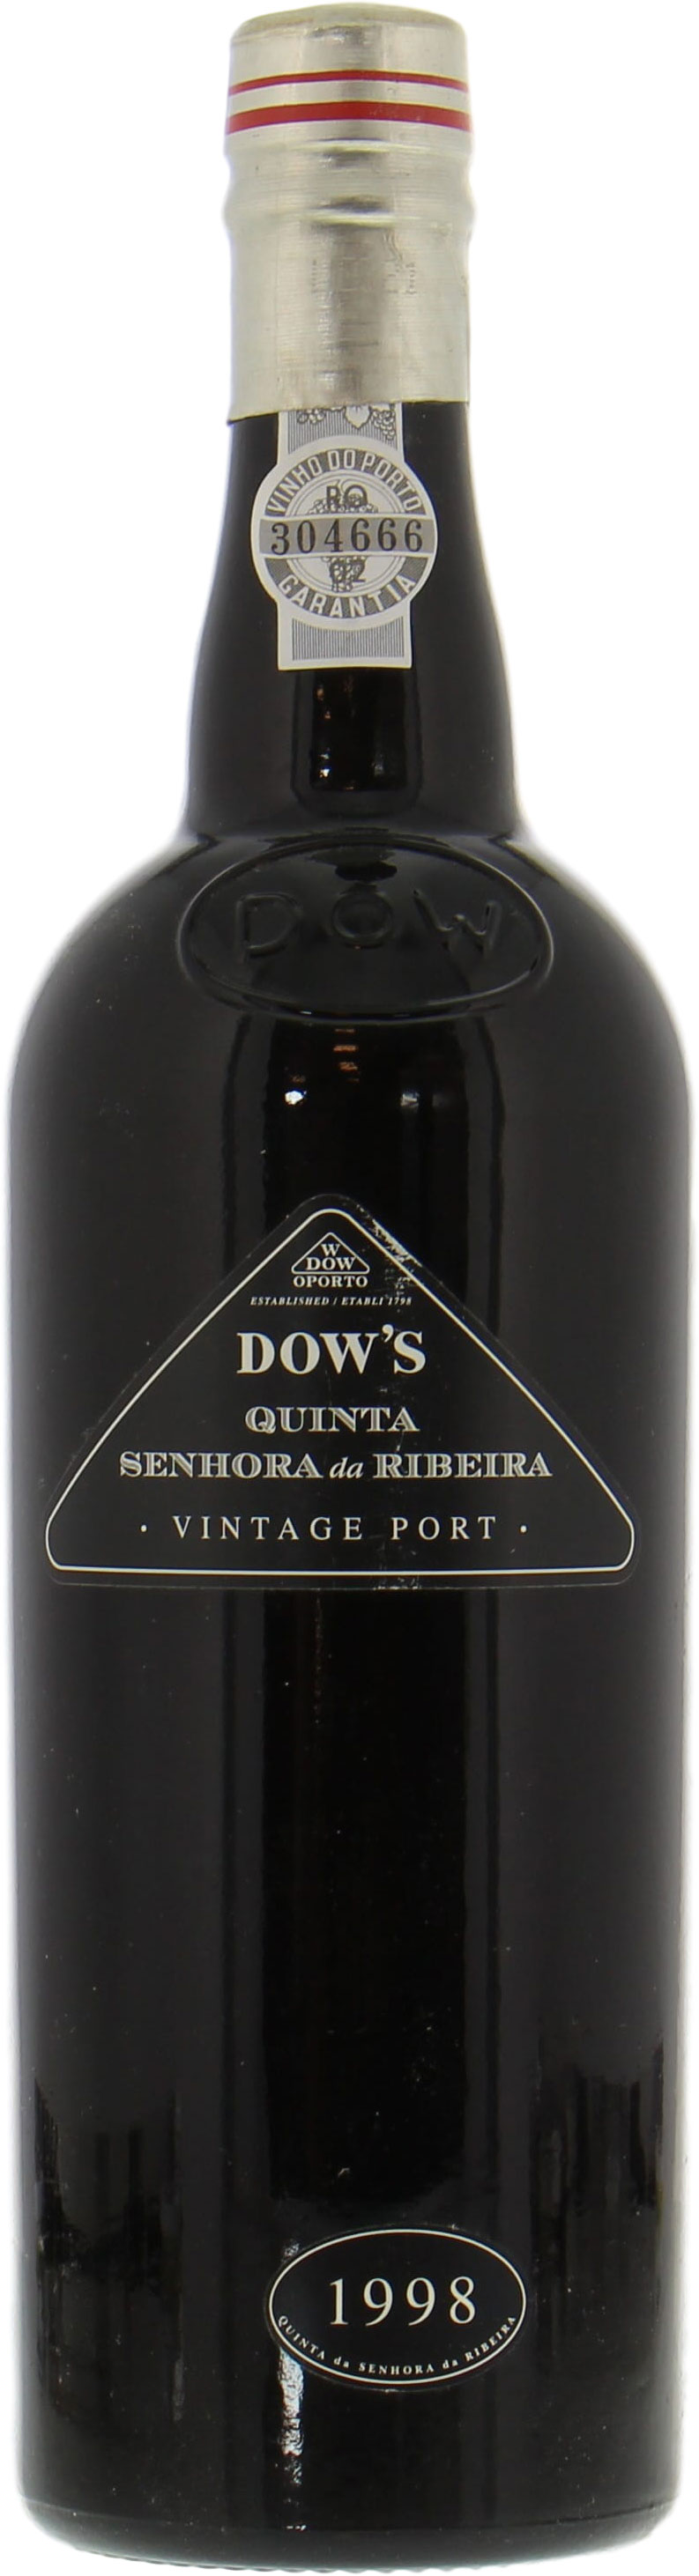 Dow's - Quinta de Senhora Da Ribeira 1998 Perfect